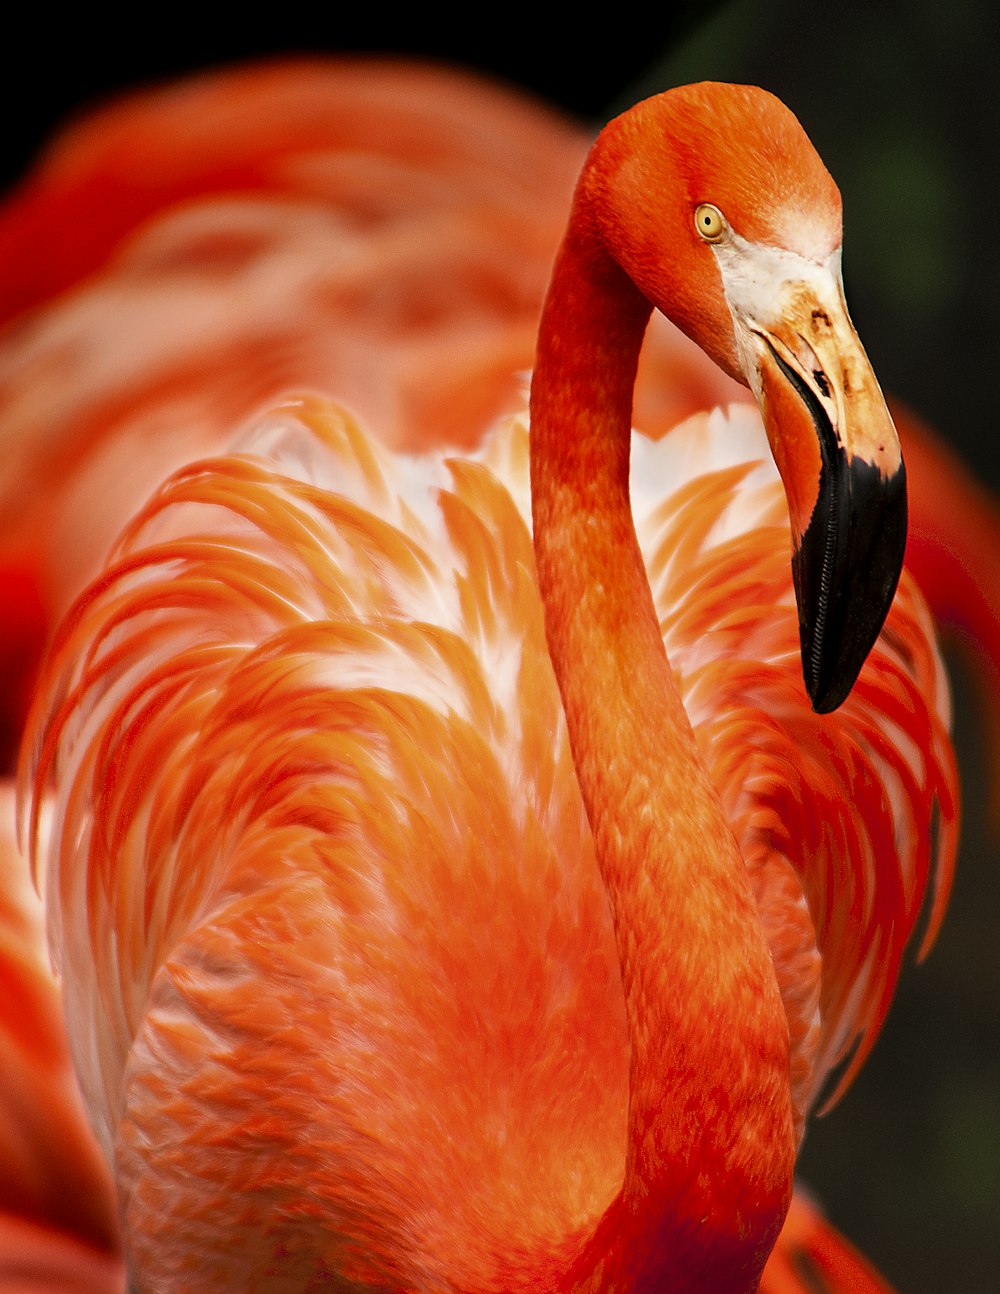 オレンジ色の鳥のクローズアップ写真